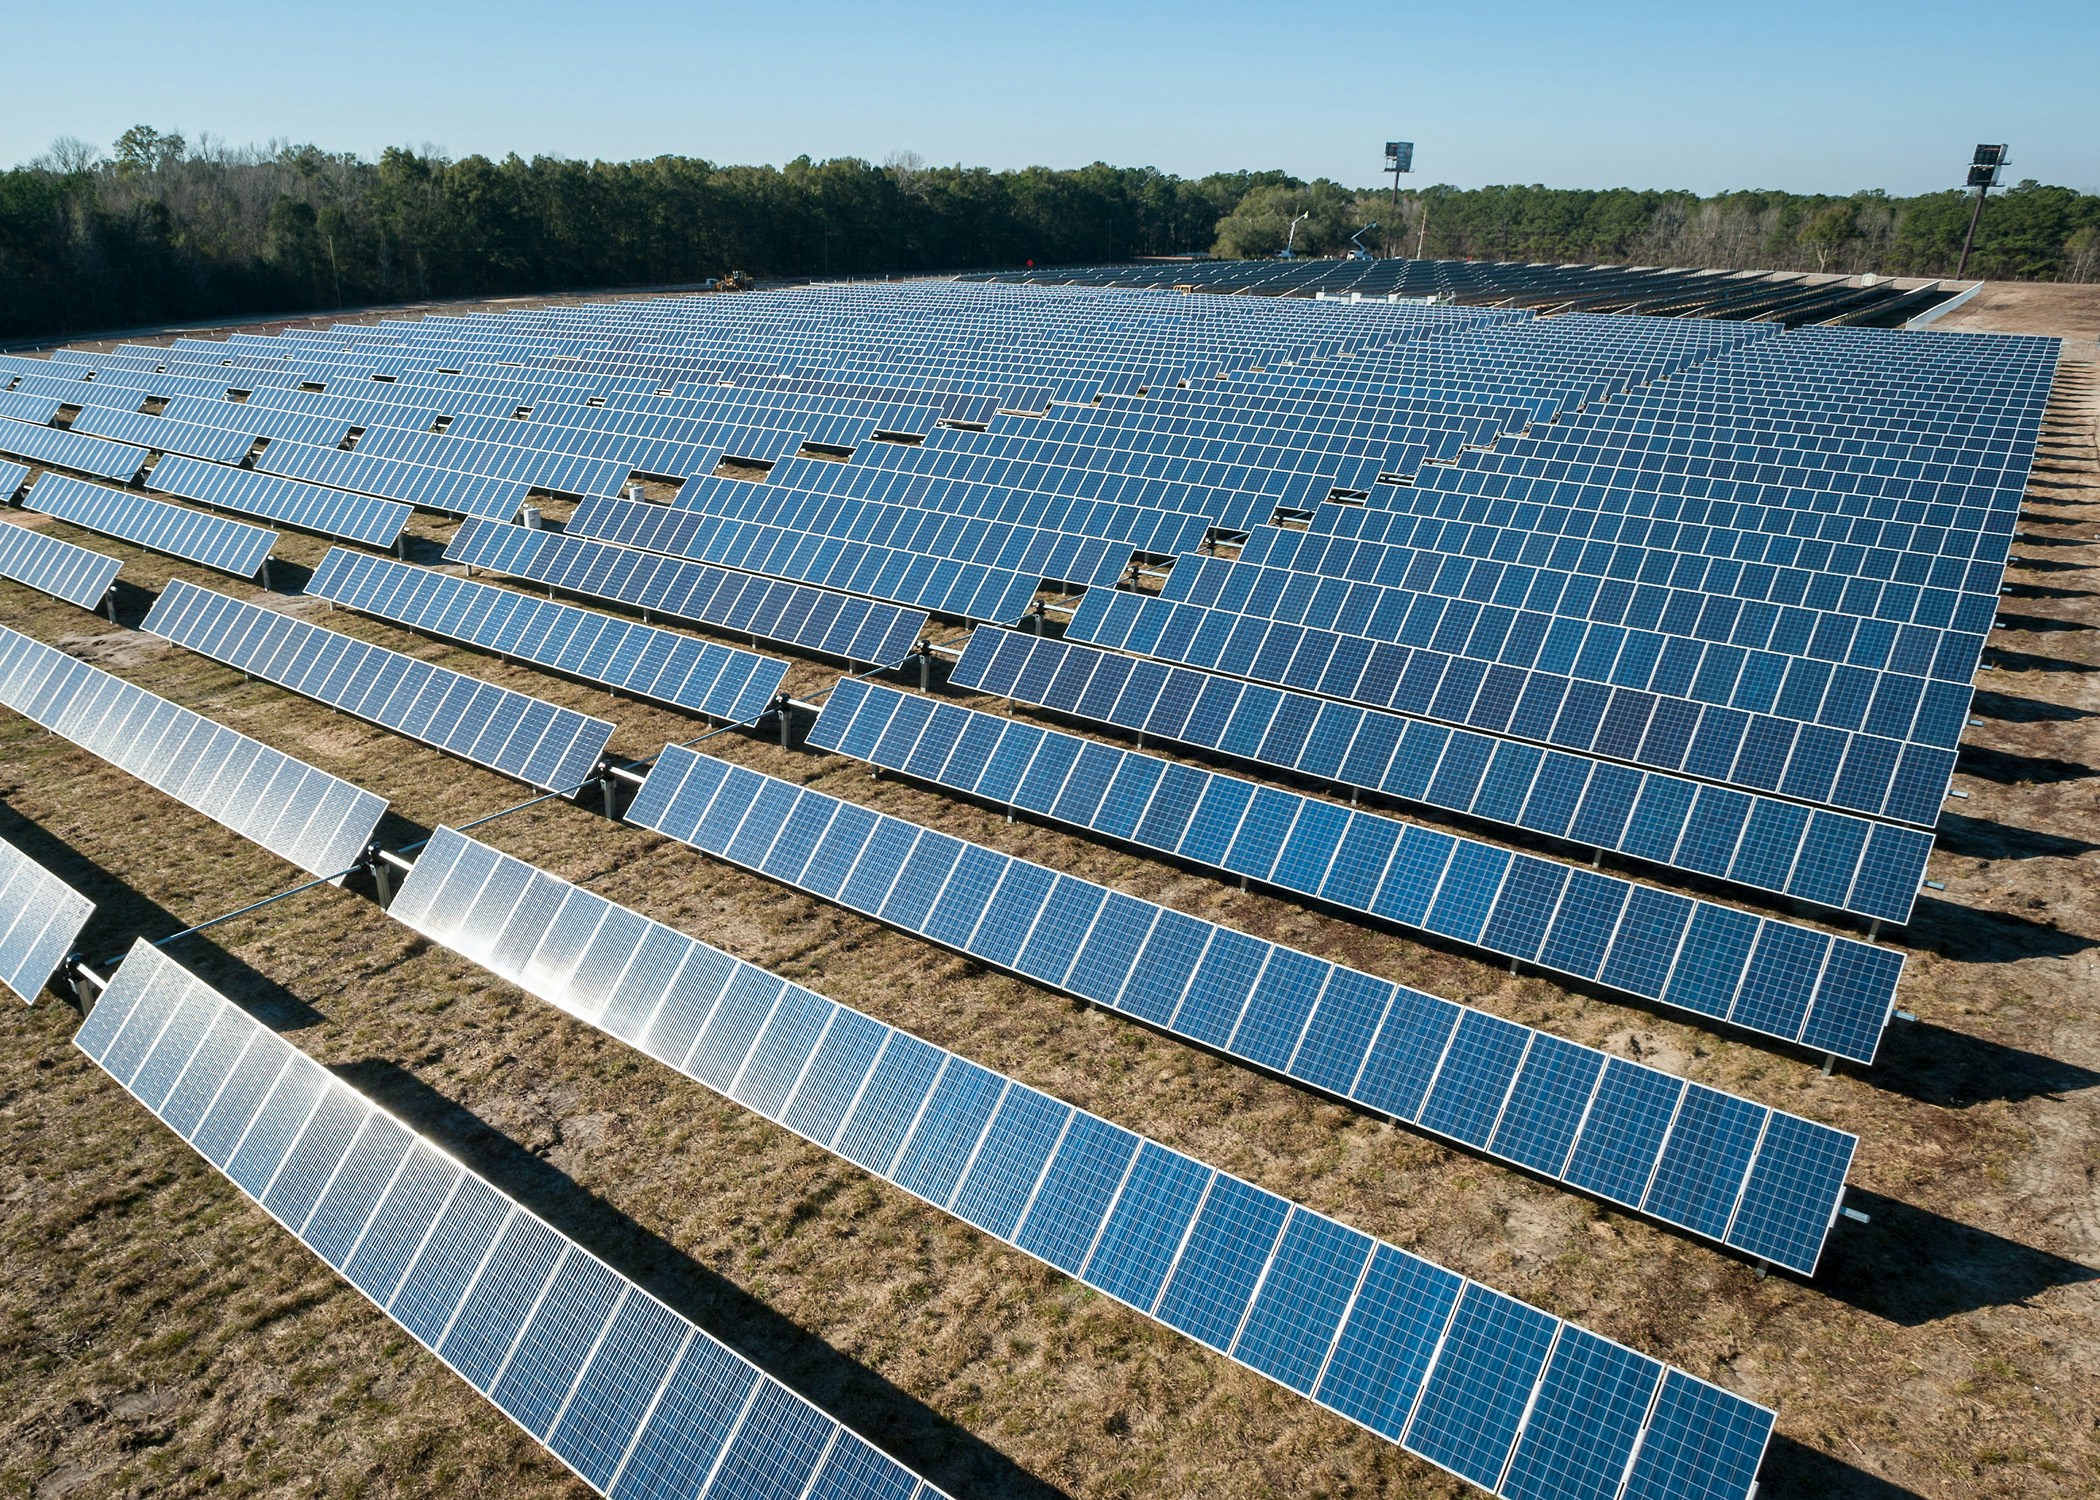 Fotovoltaico, in arrivo un’altra mega centrale da 68 ettari